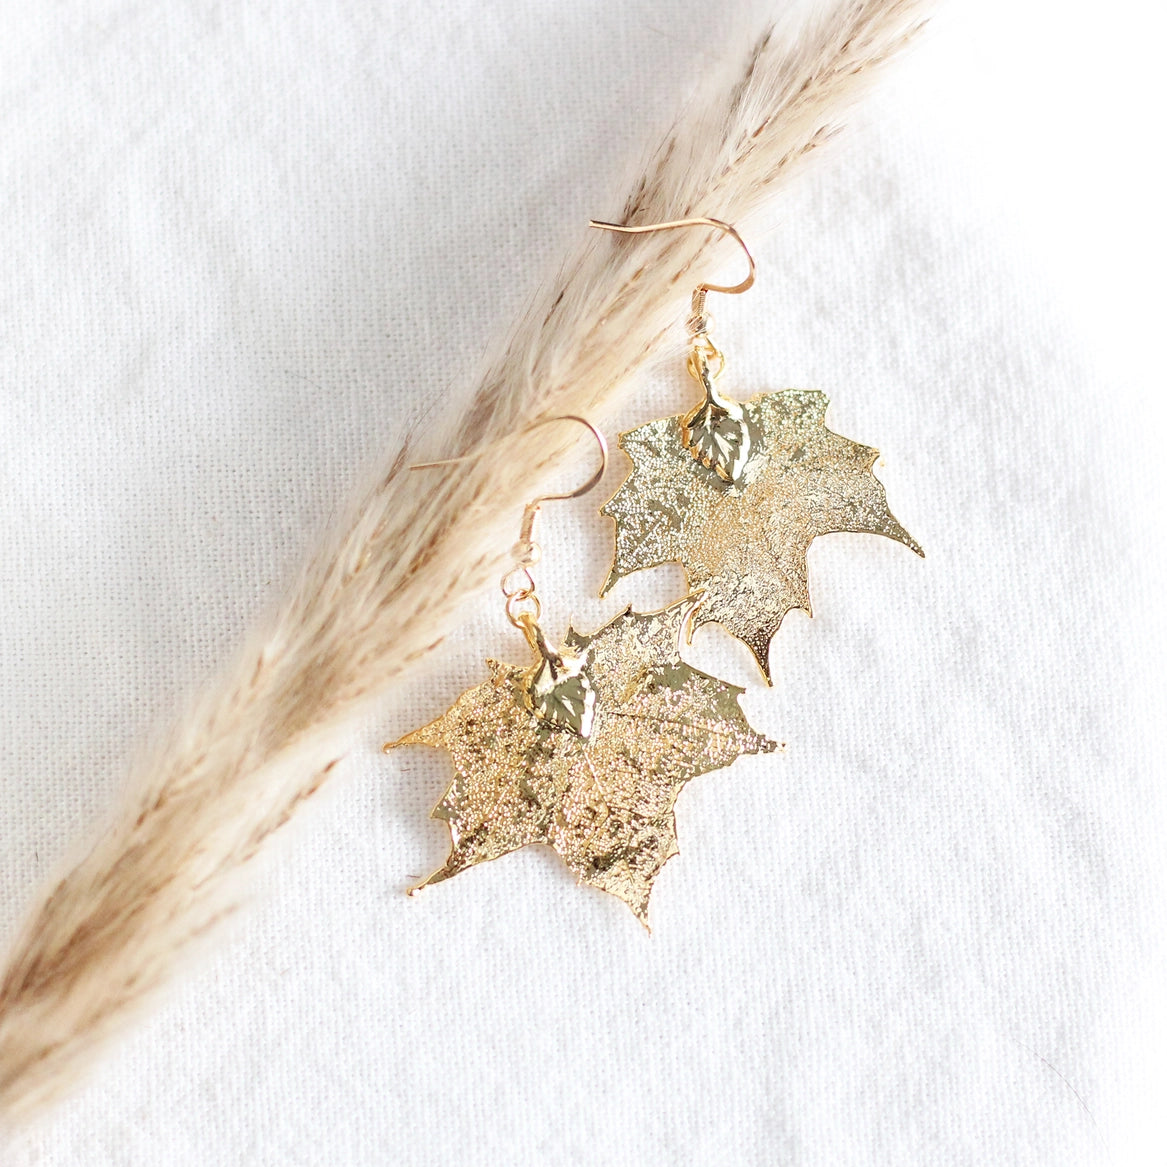 Maple Leaf Earrings - Gold - Birch Jewellery - Wild Lark